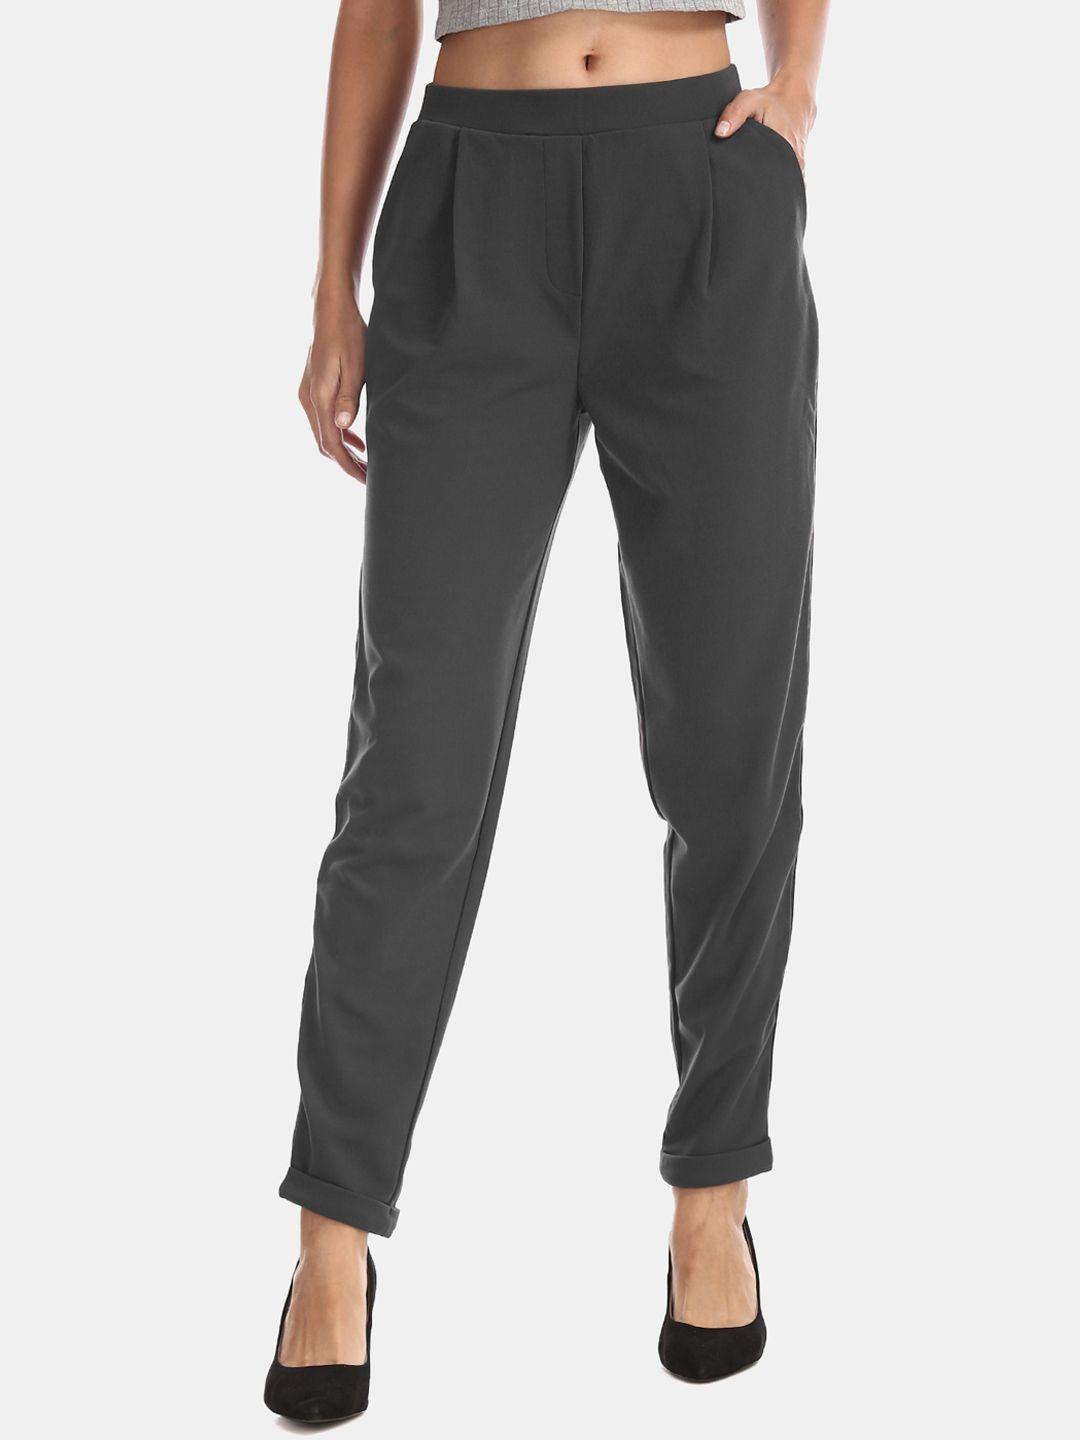 u.s. polo assn. women grey regular fit solid regular trousers